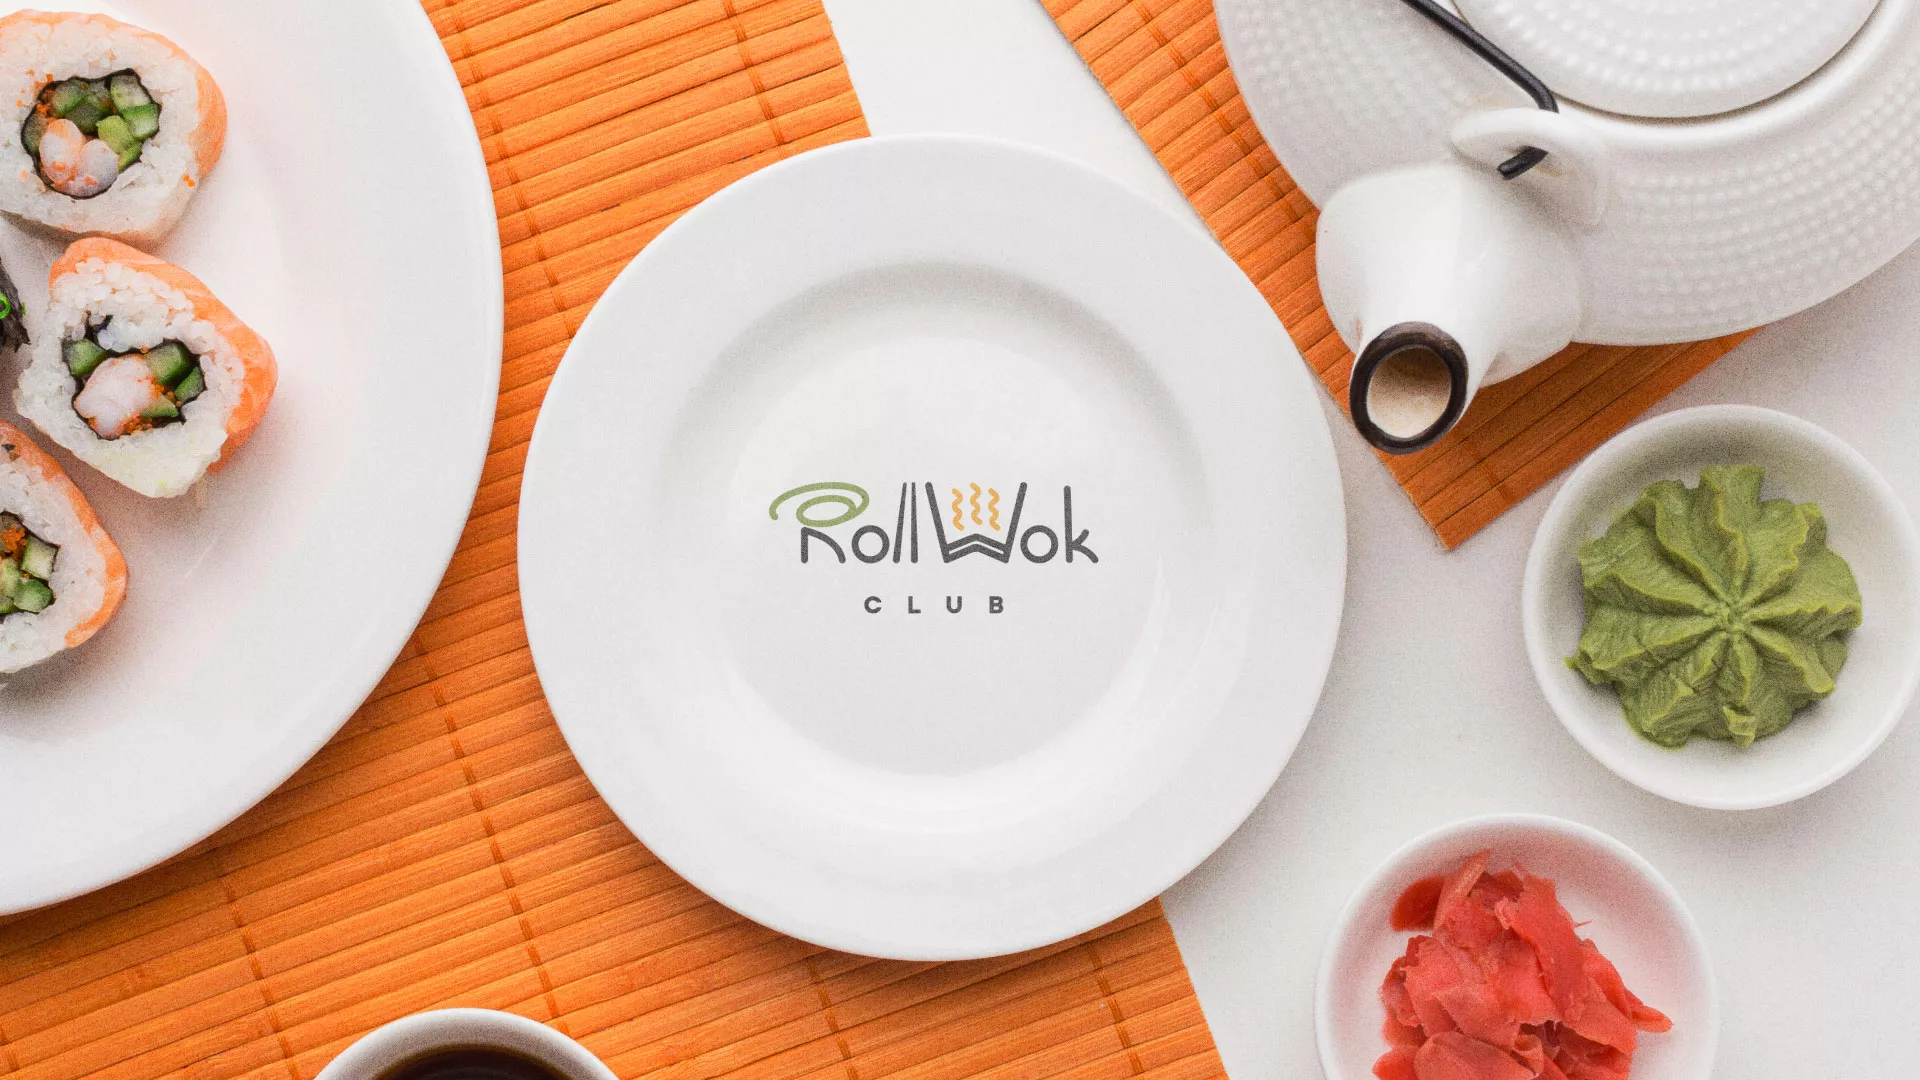 Разработка логотипа и фирменного стиля суши-бара «Roll Wok Club» в Дятьково